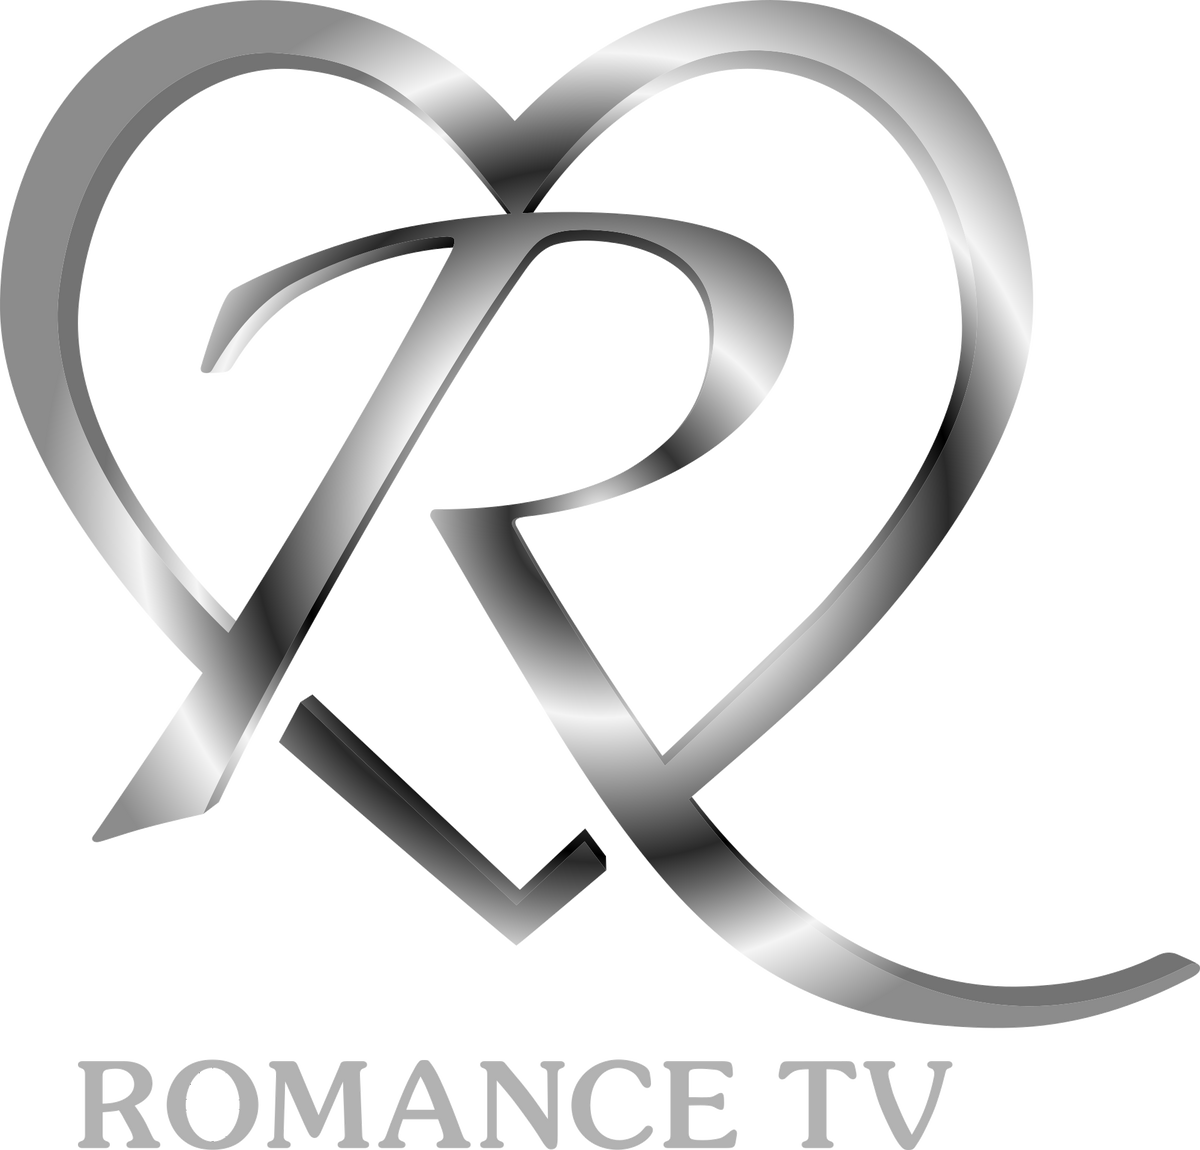 Тв romance. Логотип романса. Телеканал романс. Русский романс канал логотип. Club of Romance logo сб.